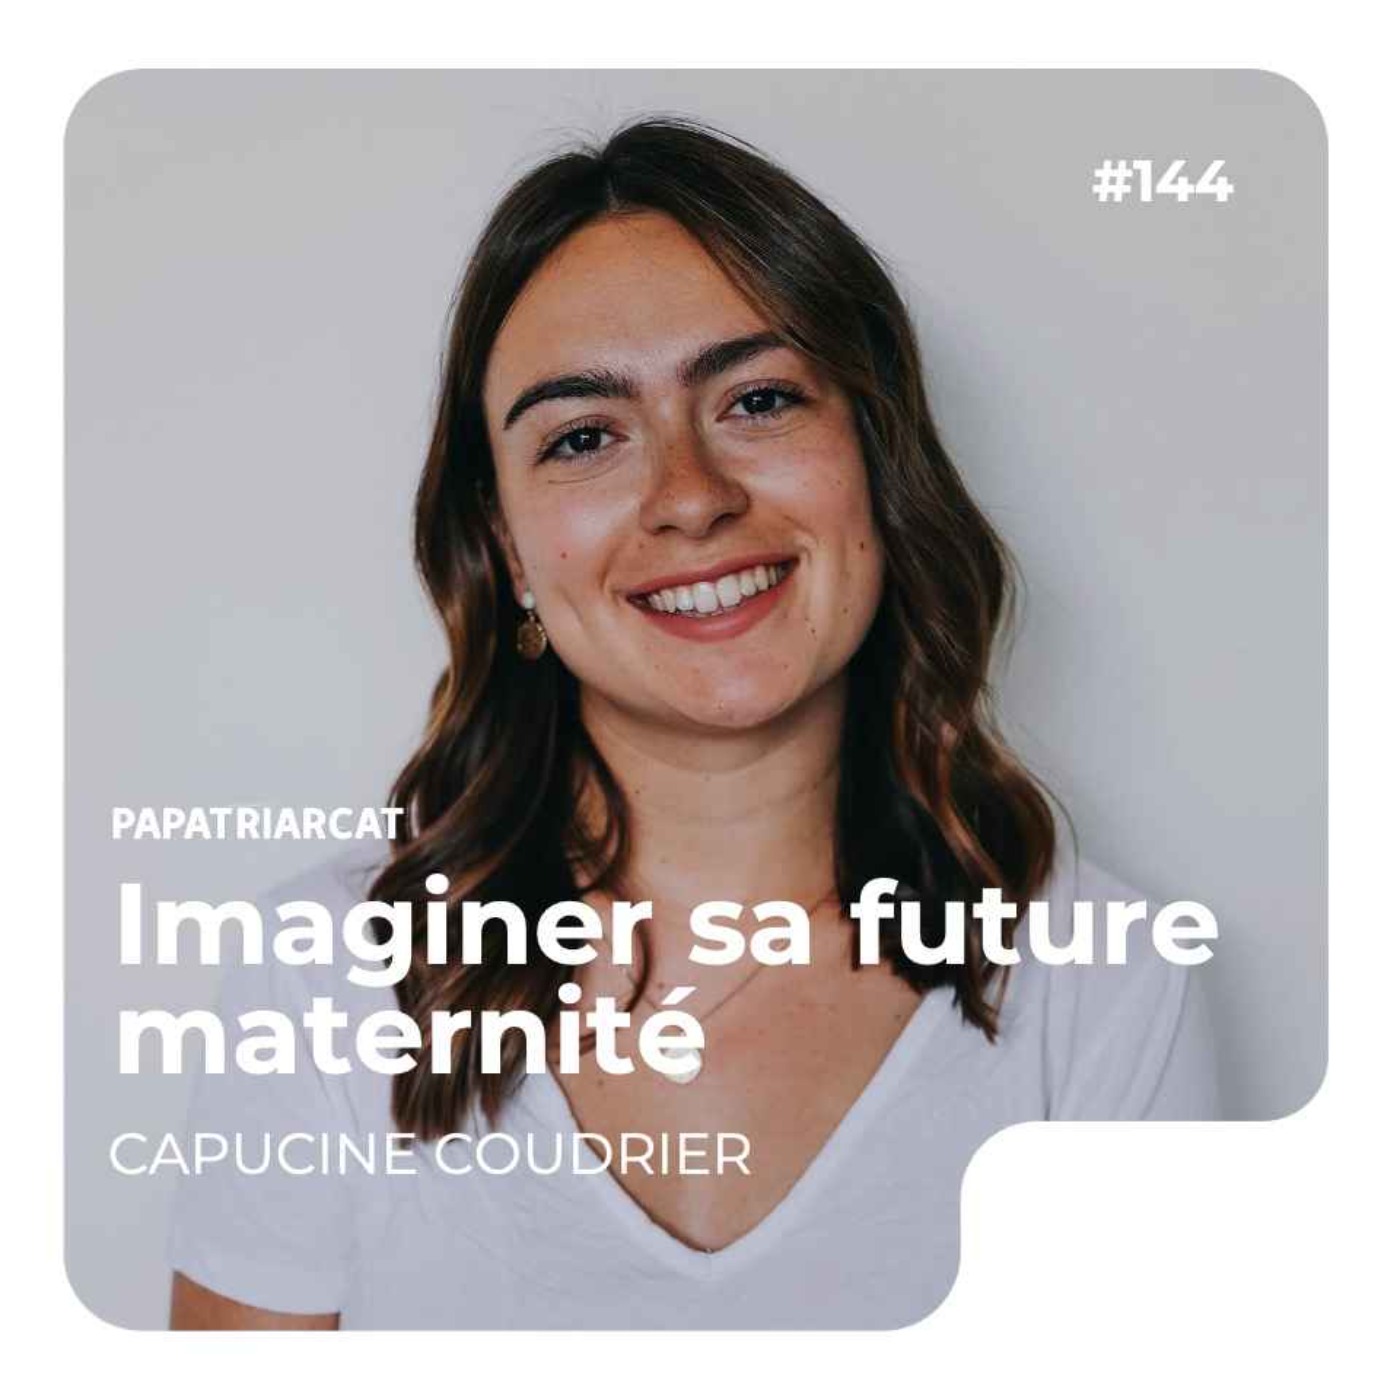 #144 - Imaginer sa future maternité - Capucine Coudrier